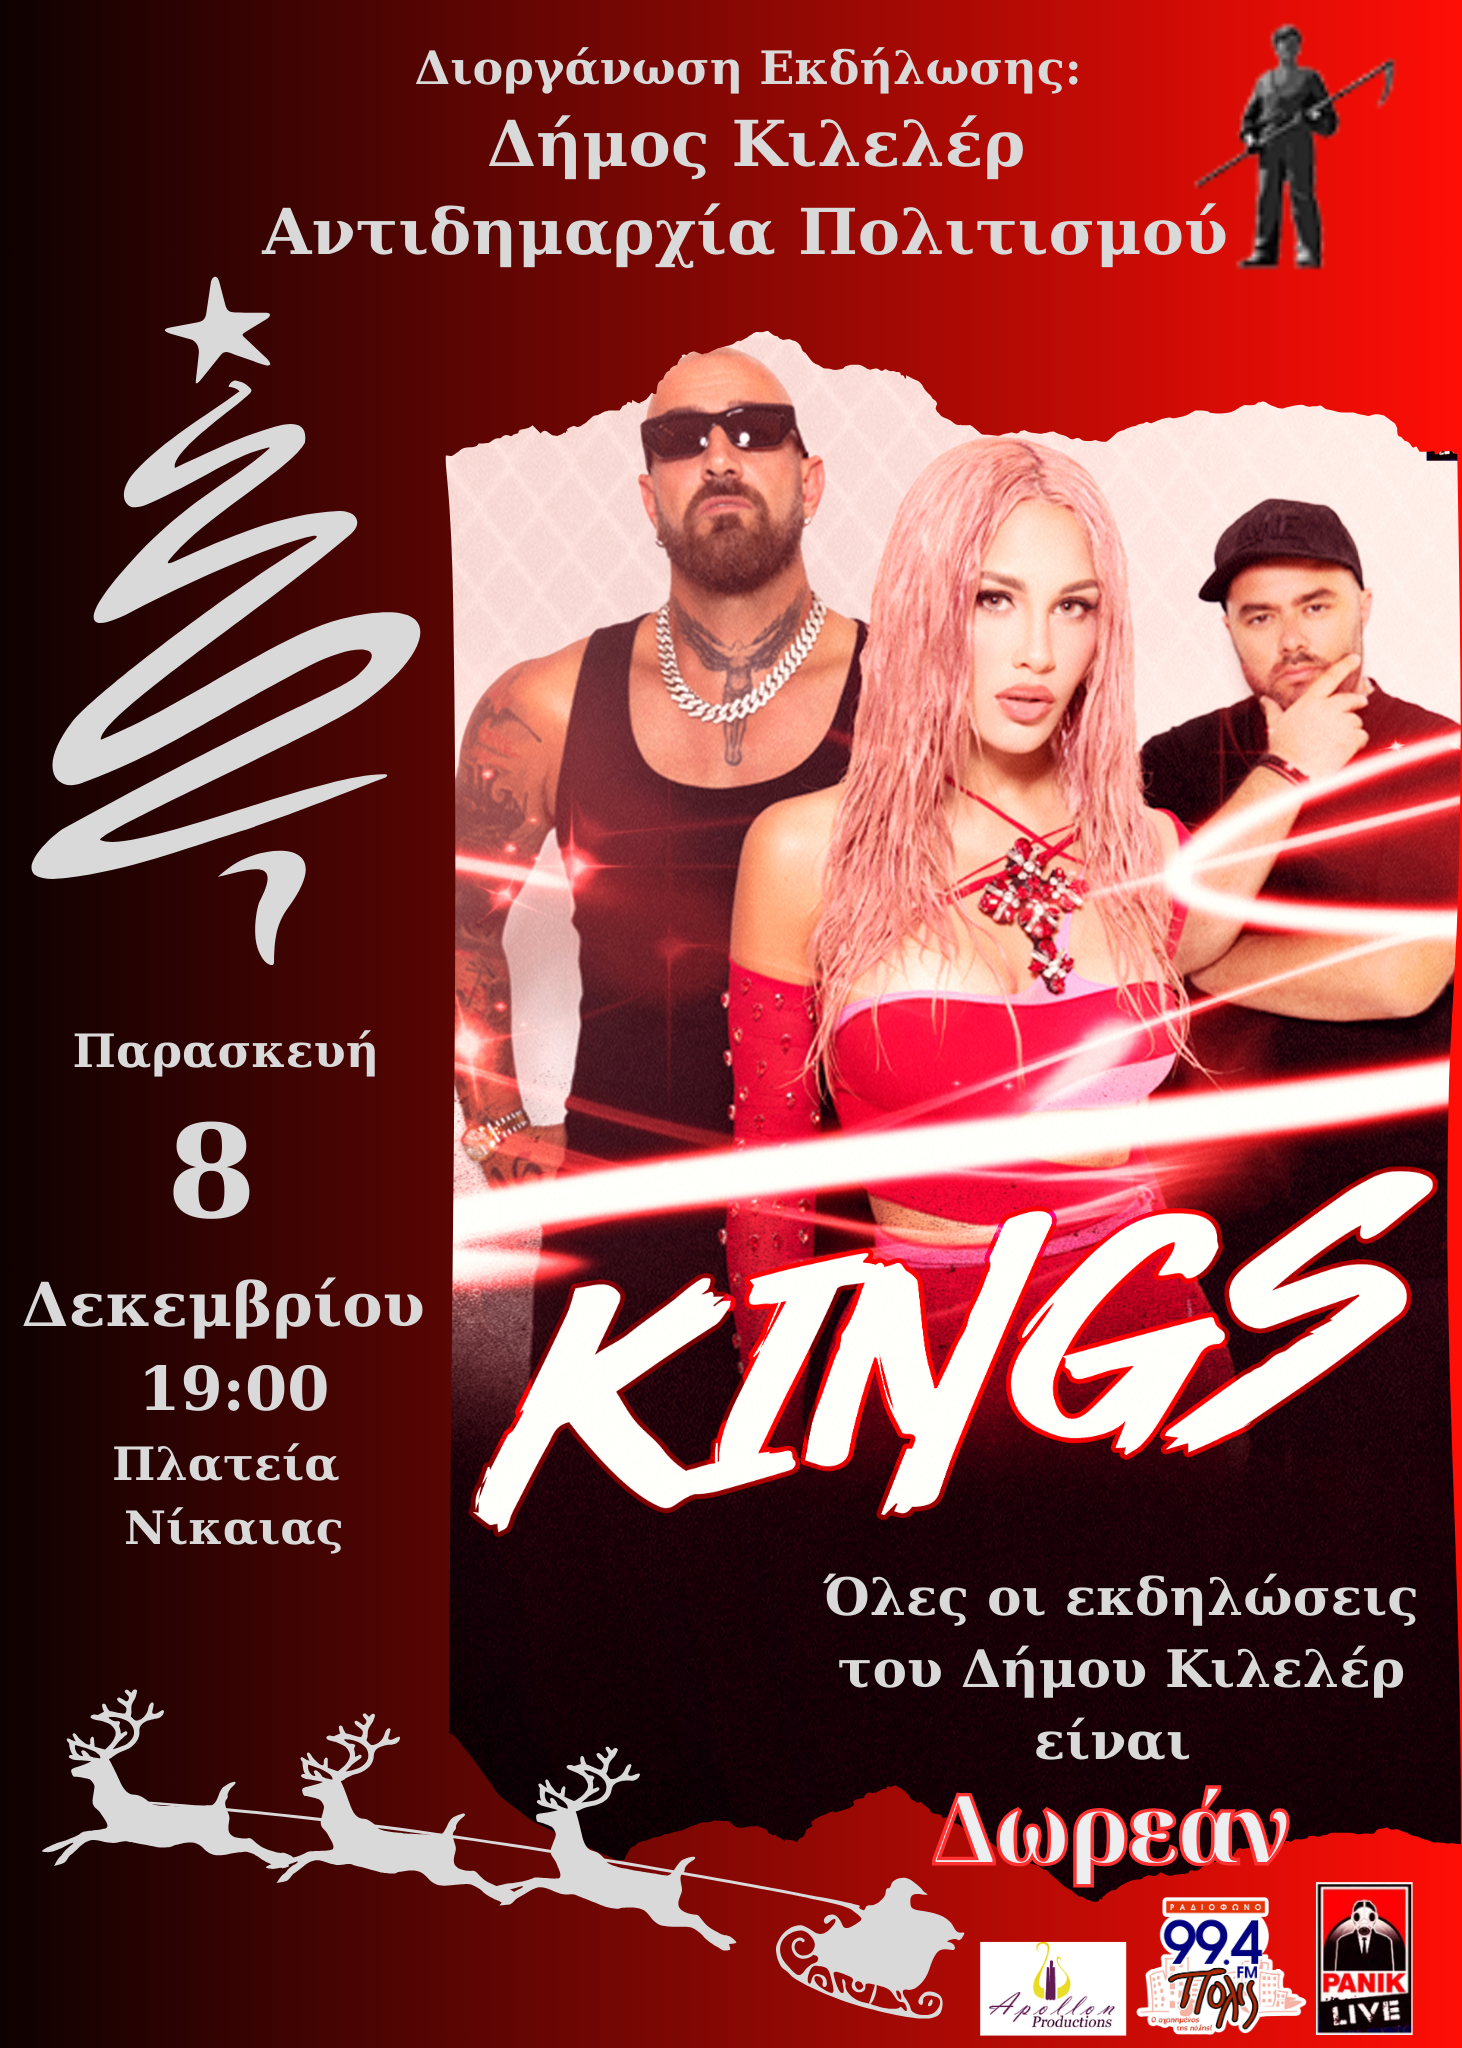 Μεγάλη συναυλία με τους Kings στο άναμμα του Χριστουγεννιάτικου δέντρου στη Νίκαια